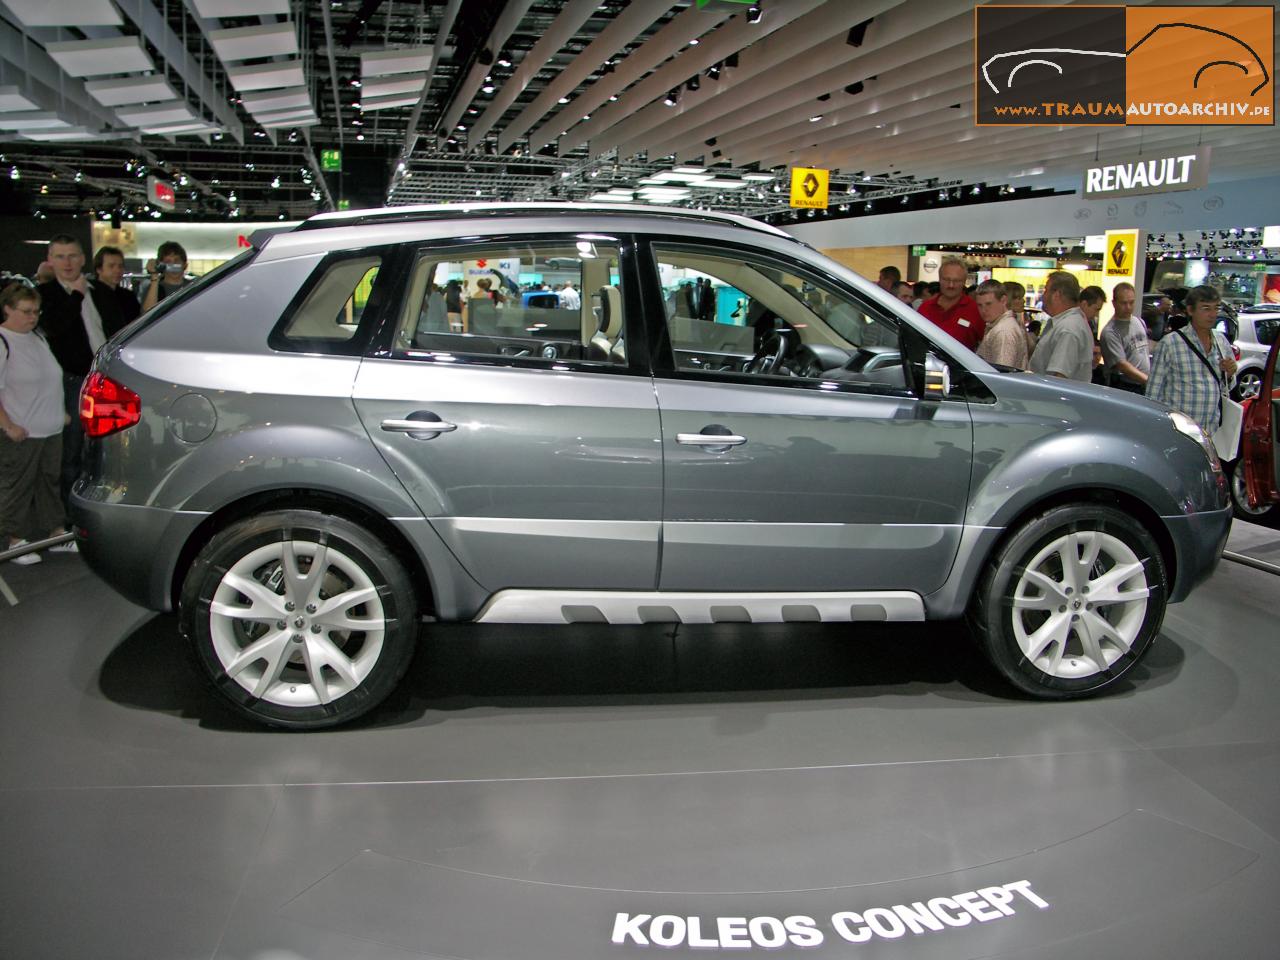 Renault Koleos '2007.jpg 160.6K